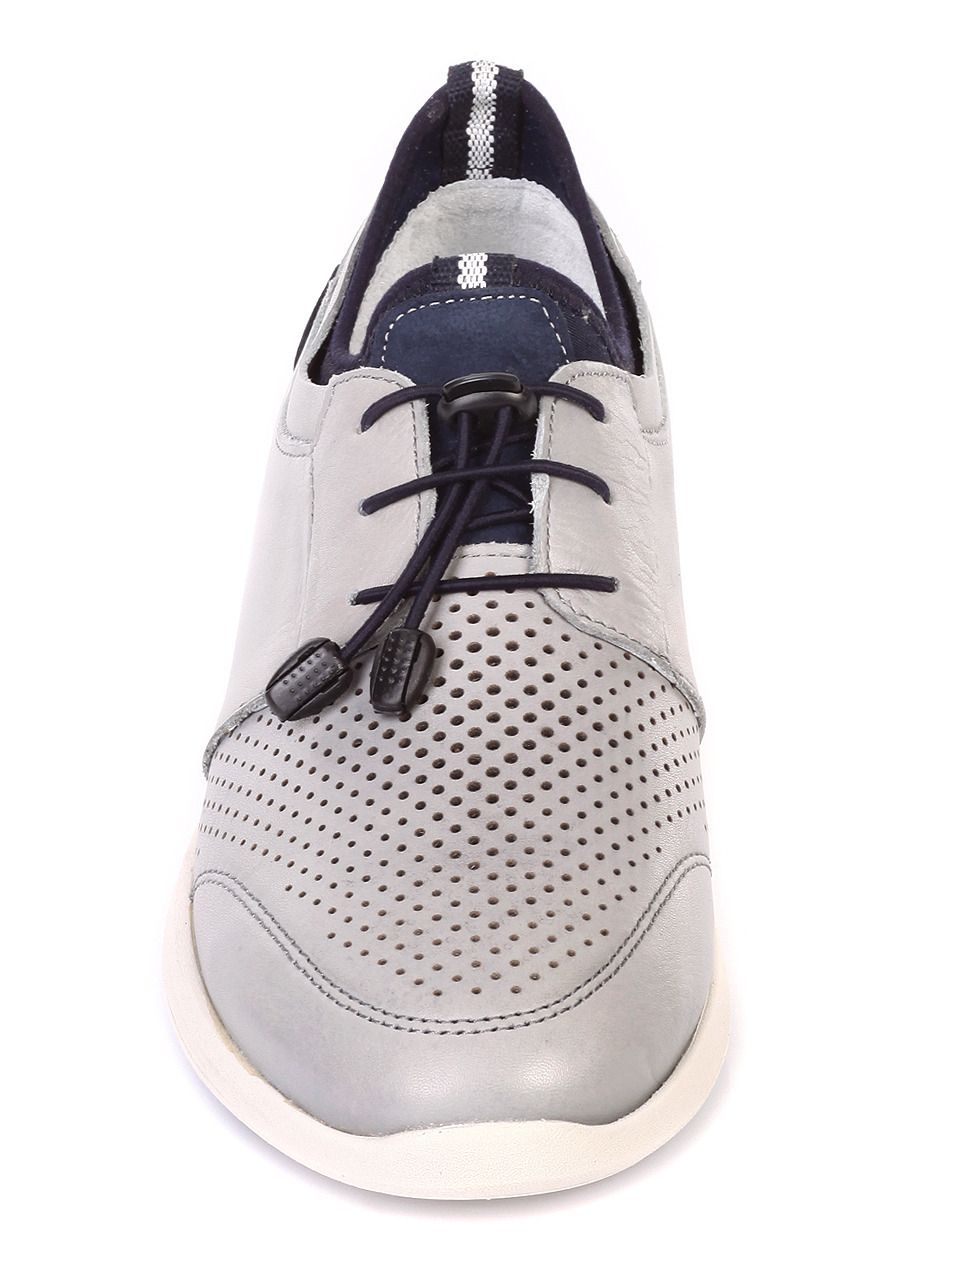 Ежедневни мъжки обувки от естествена кожа в сиво 7AT-19460 grey